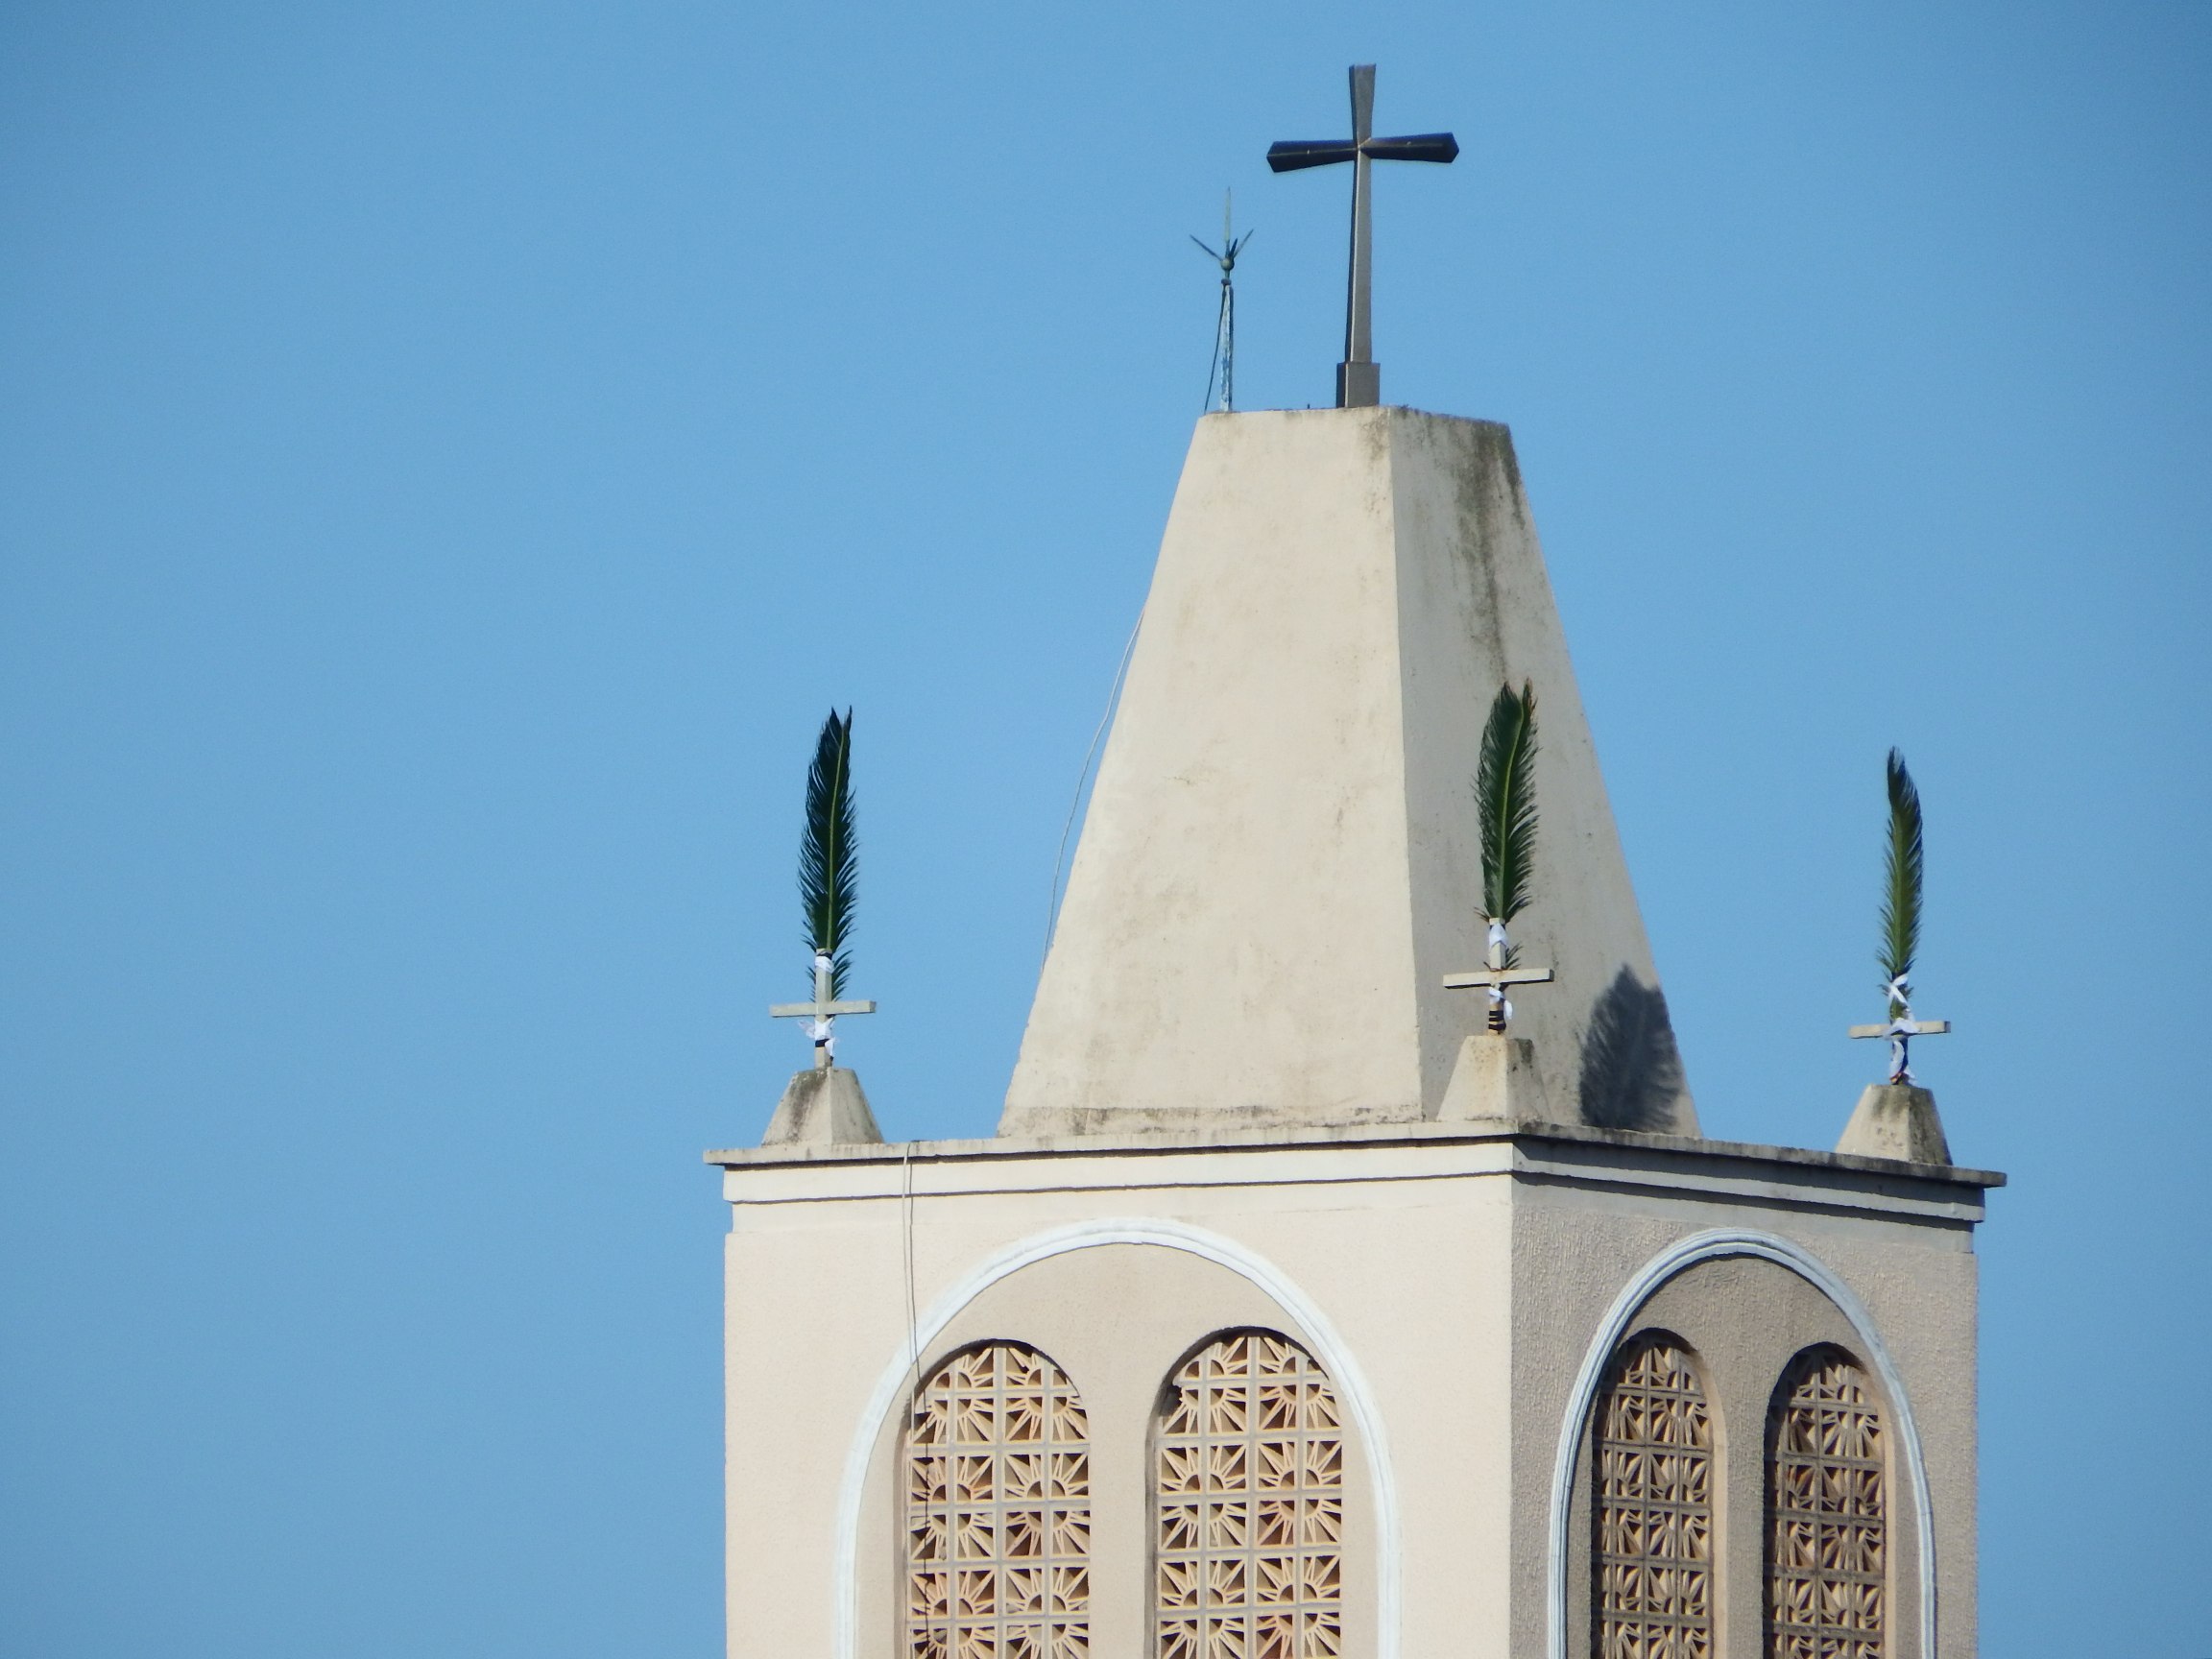 Palmas foram colocadas nas cruzes da torre